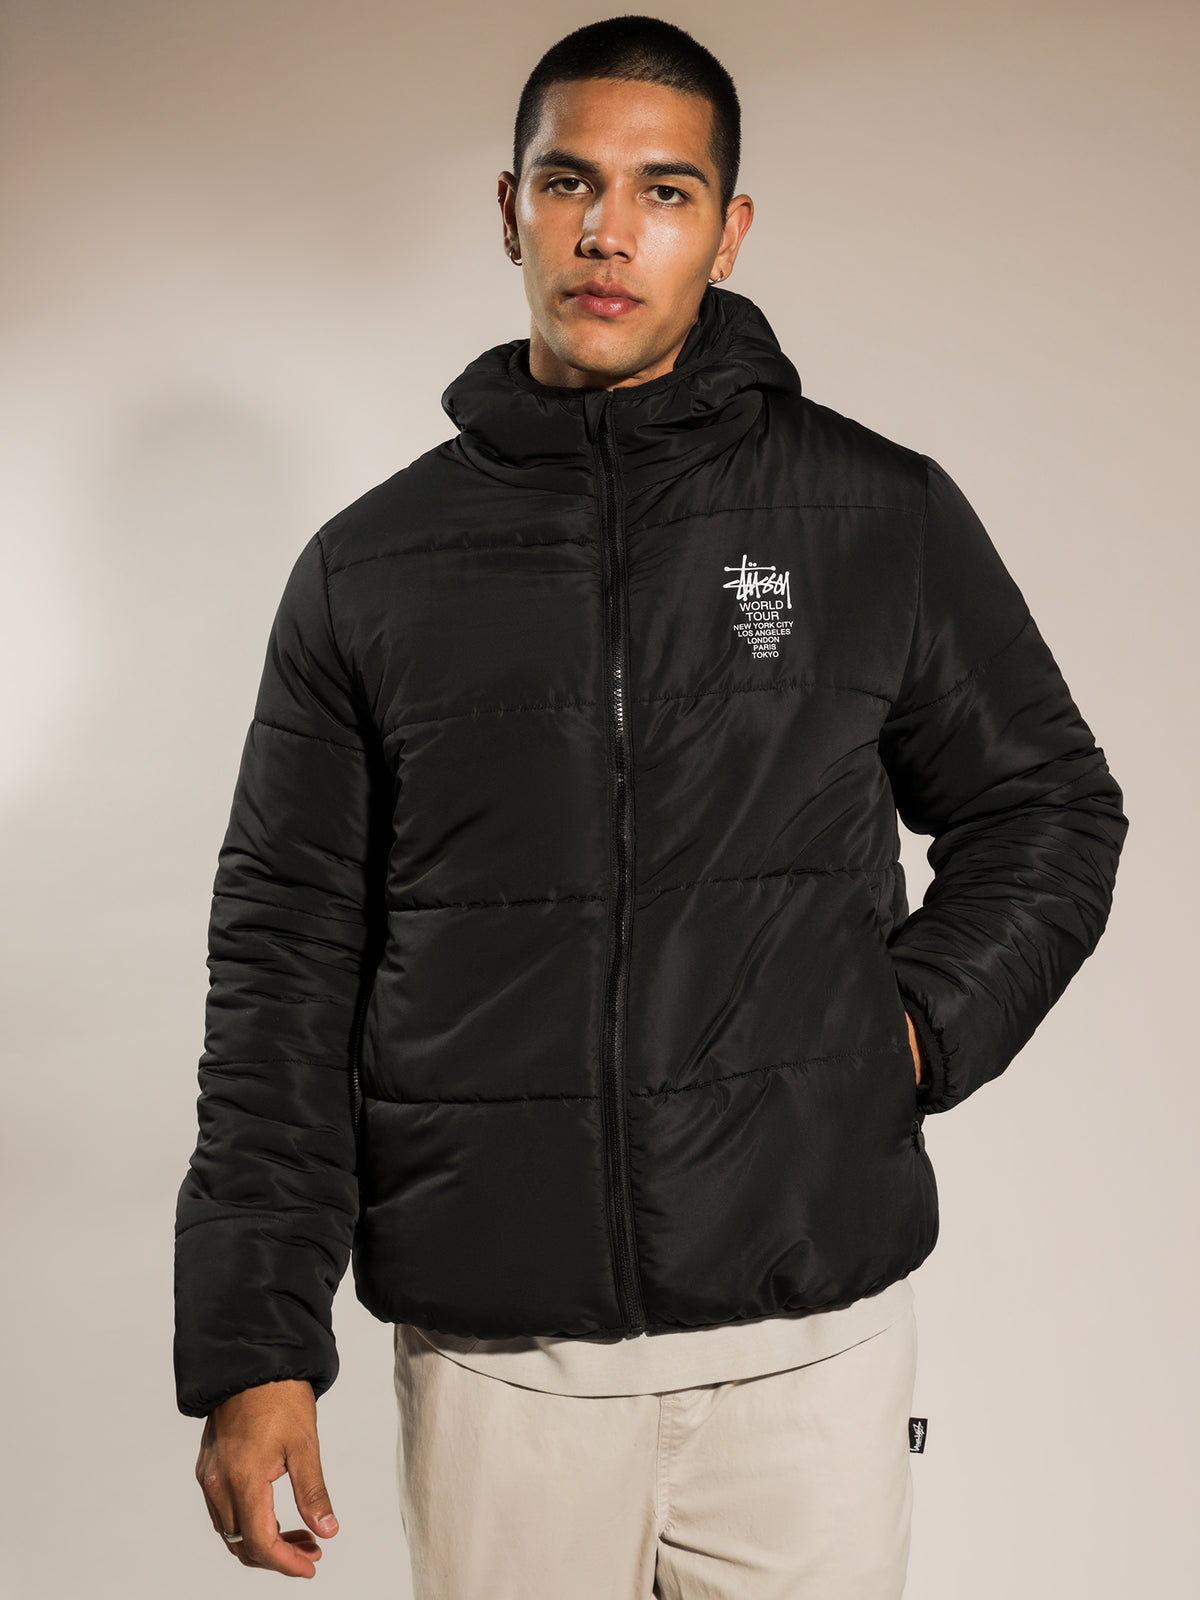 Worldwide Lightweight Puffer Jacket in Black